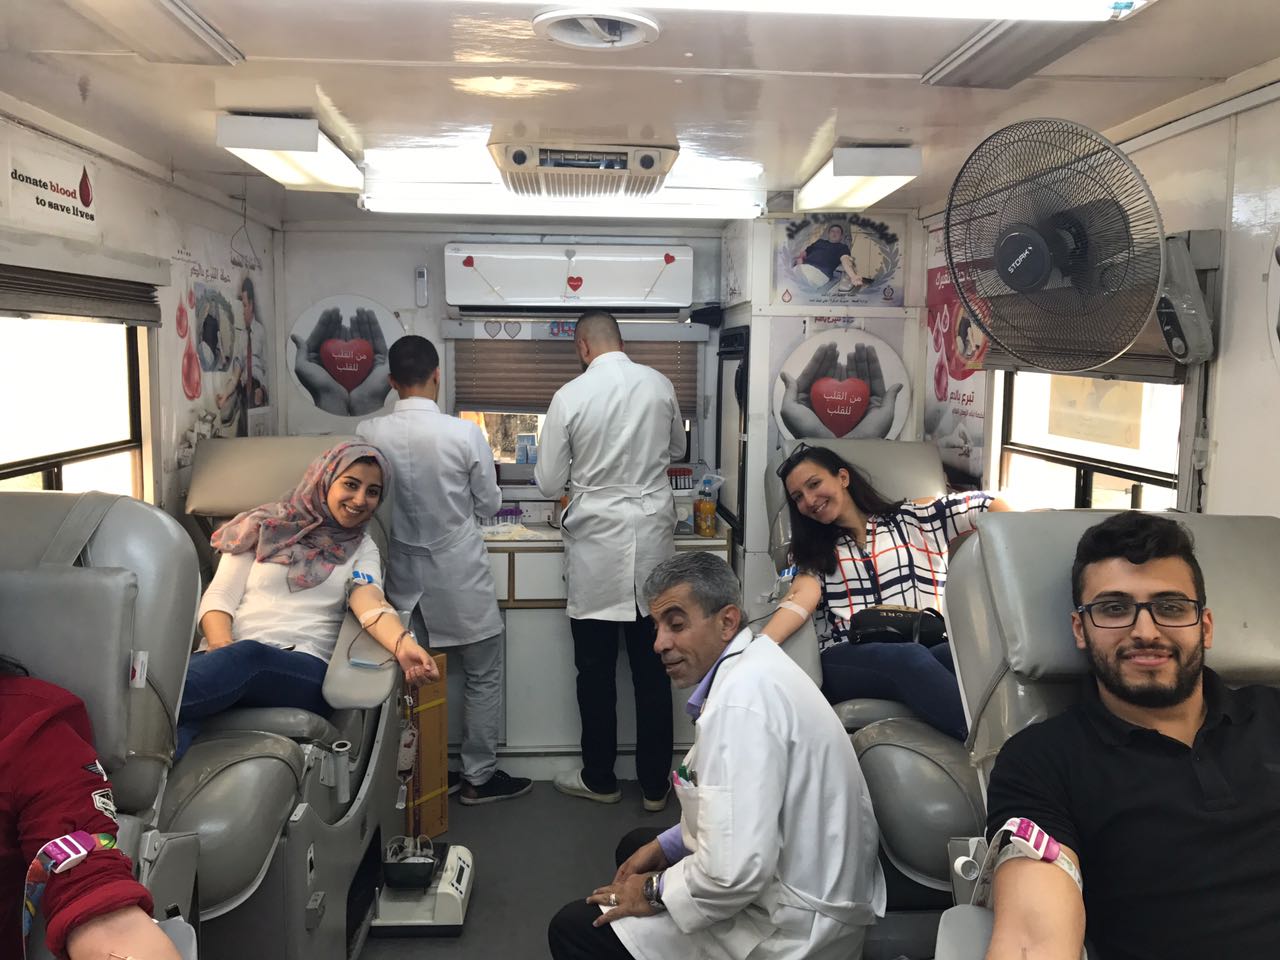 جامعة عمان الاهلية تقوم بحملة للتبرع بالدم و بحملة تبرعات لتأمين كسوة وهدايا للأطفال المحتاجين قبل حلول رمضان